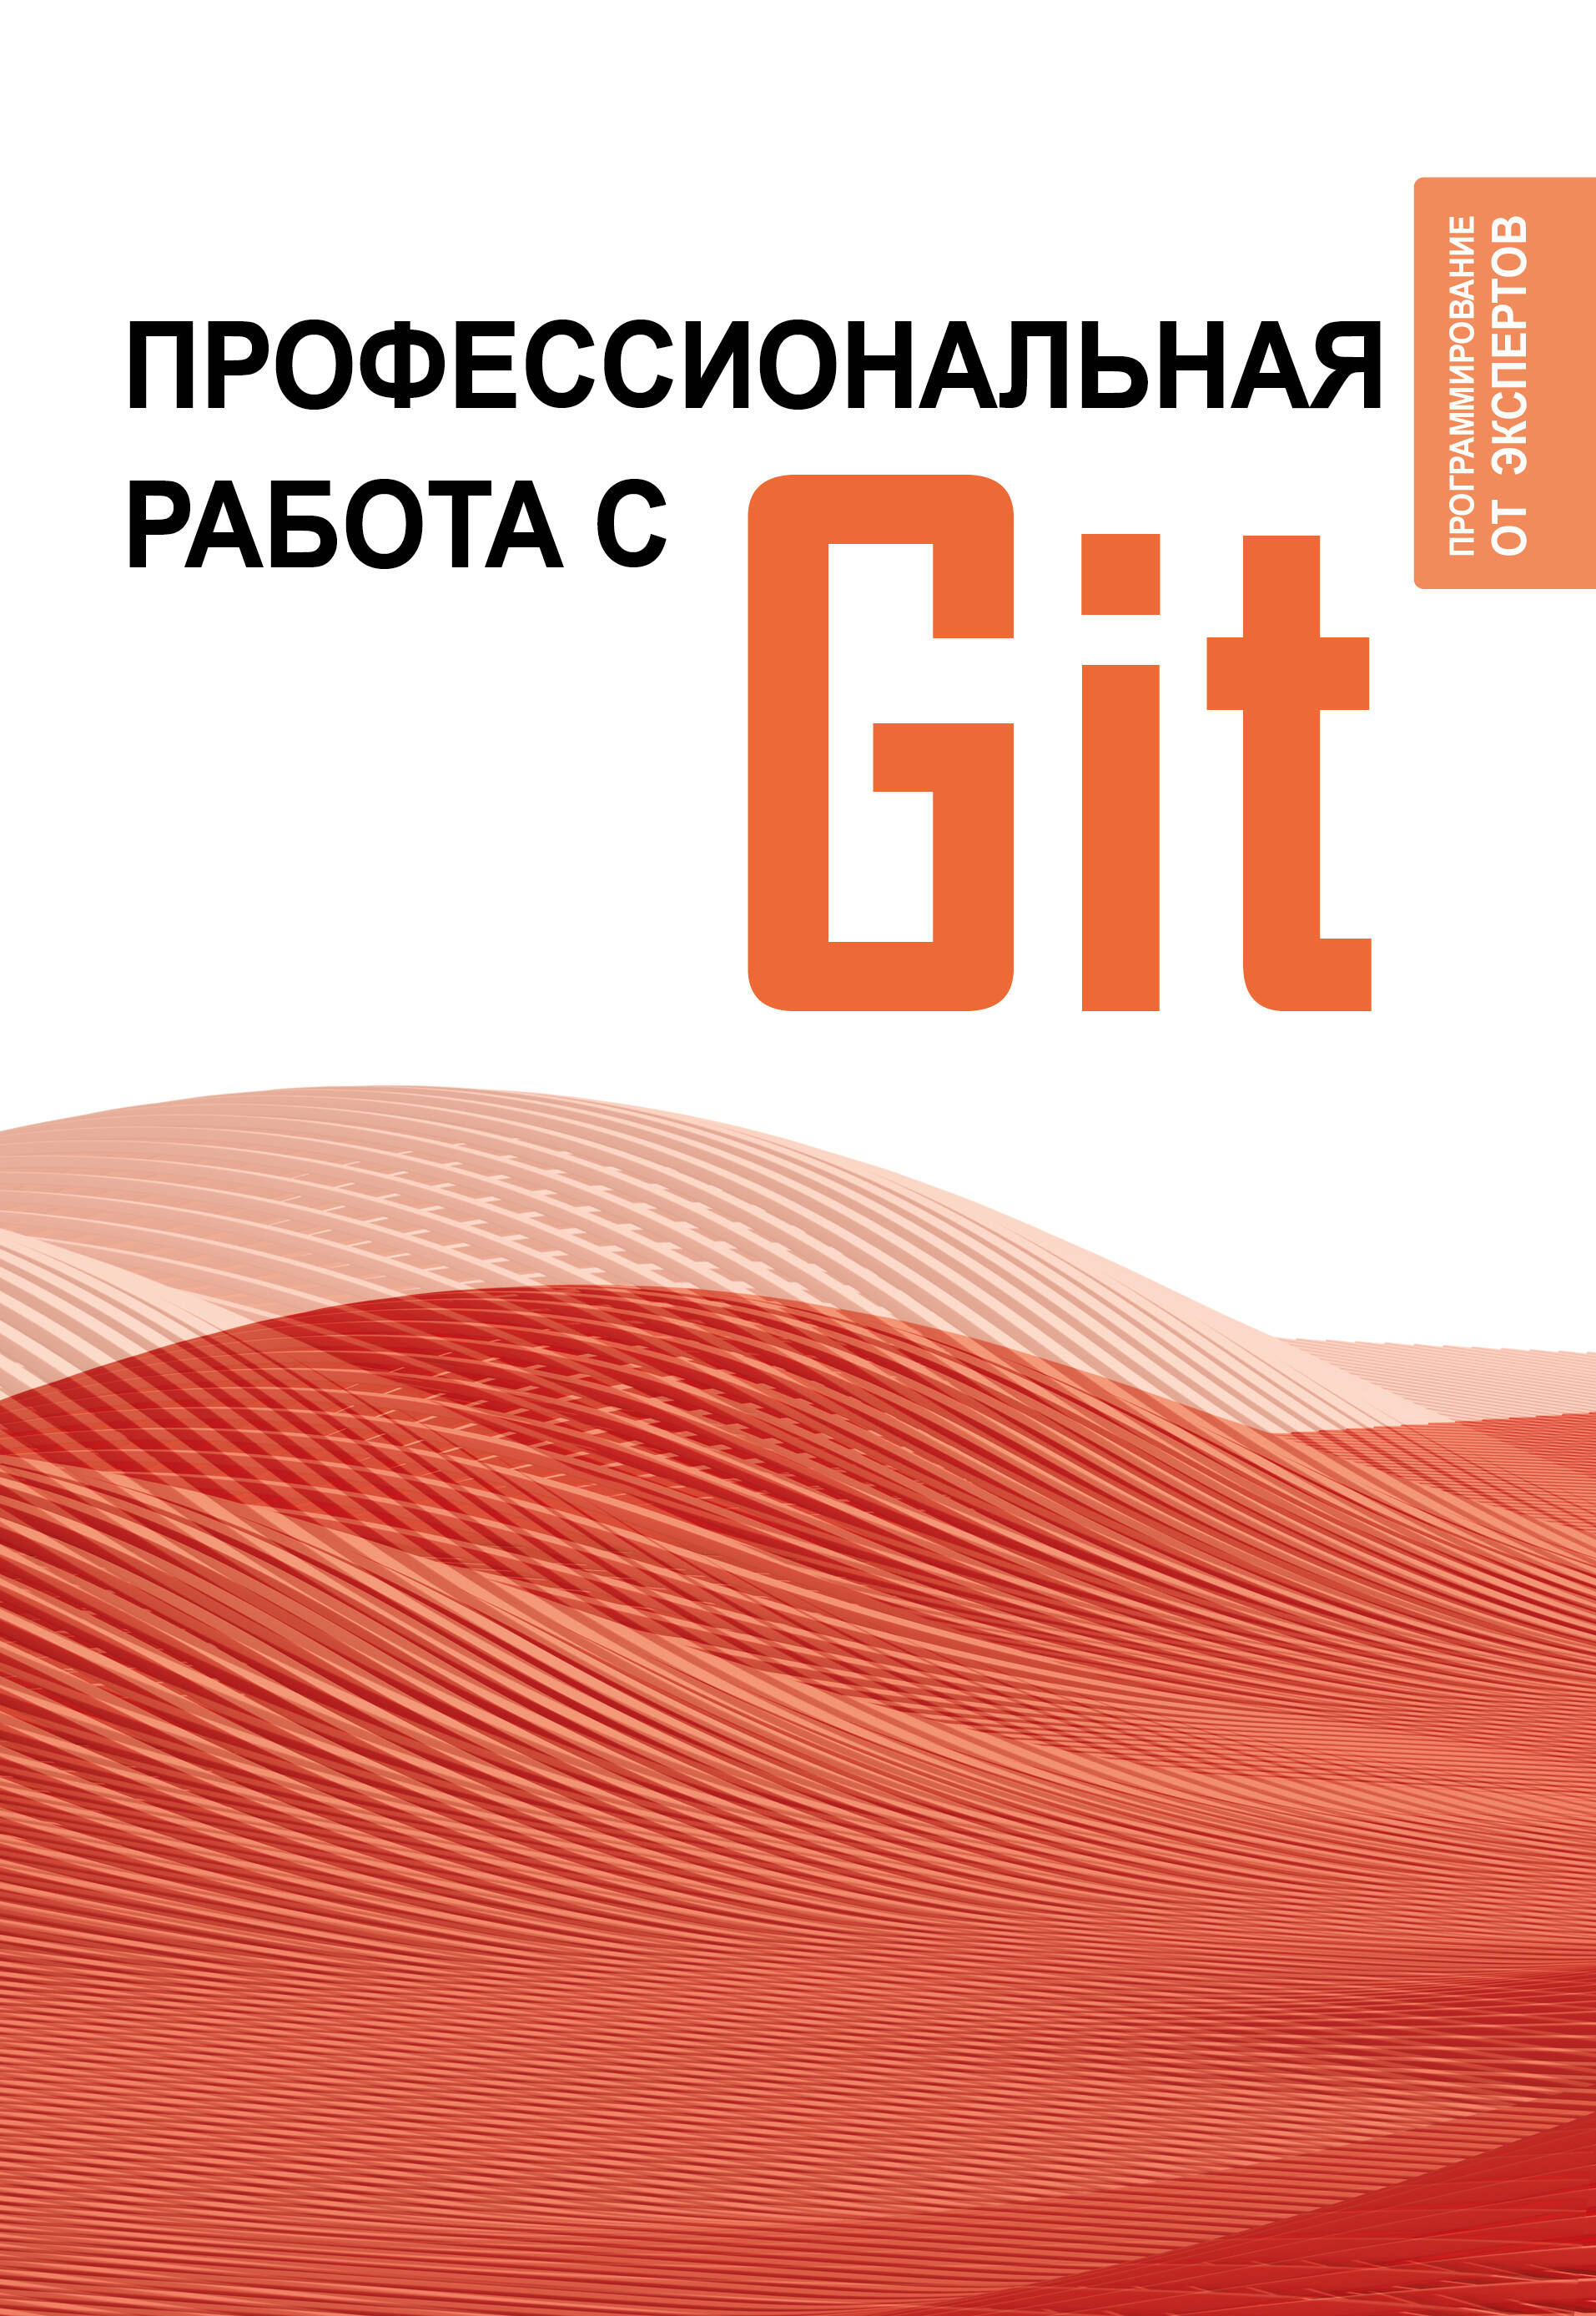 введение в git Профессиональная работа с GIT